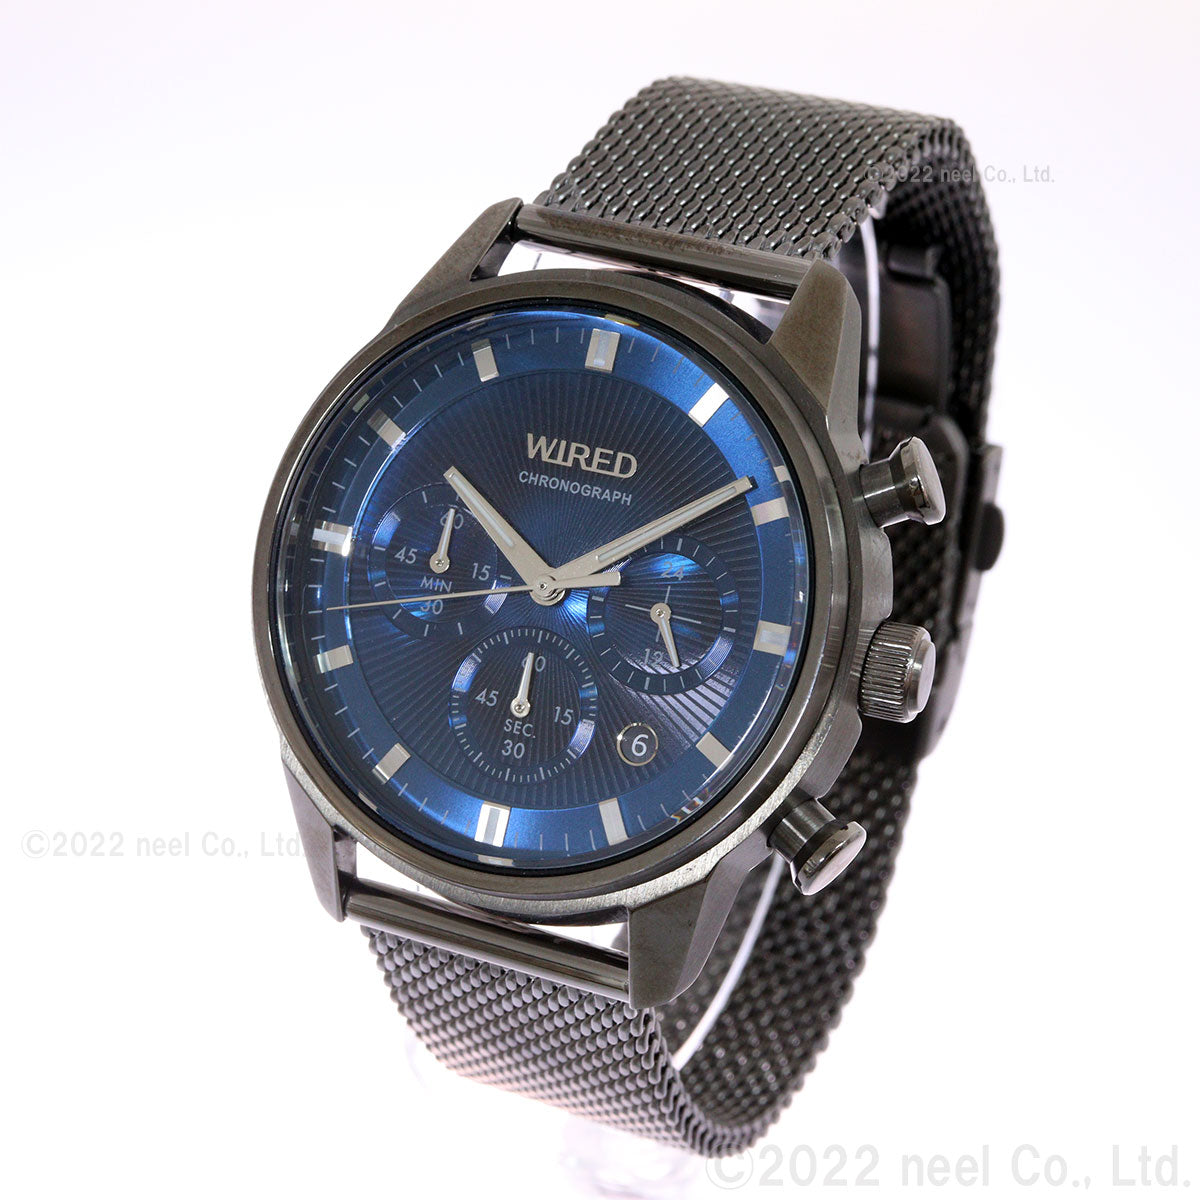 セイコー ワイアード SEIKO WIRED 腕時計 メンズ クロノグラフ TOKYO SORA AGAT453